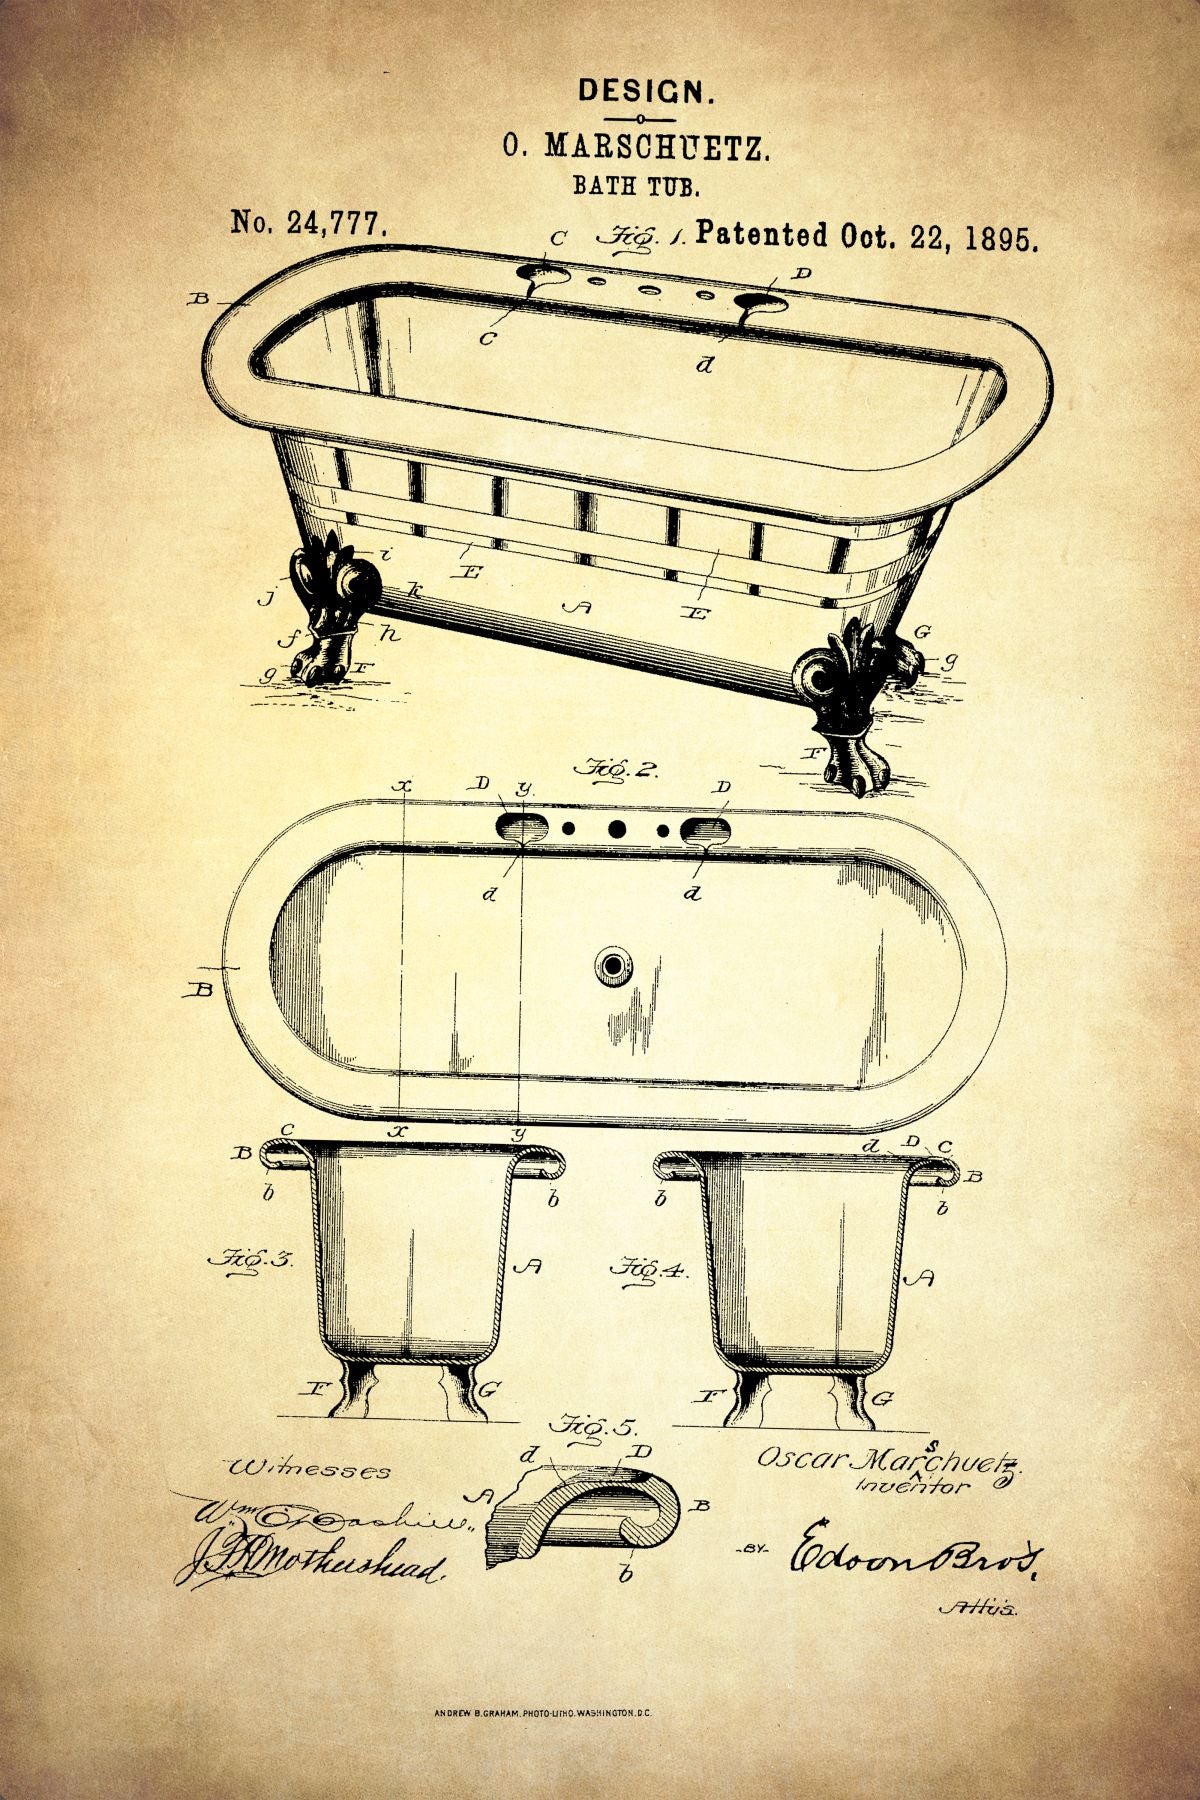 Bath Tub 1895 Patent